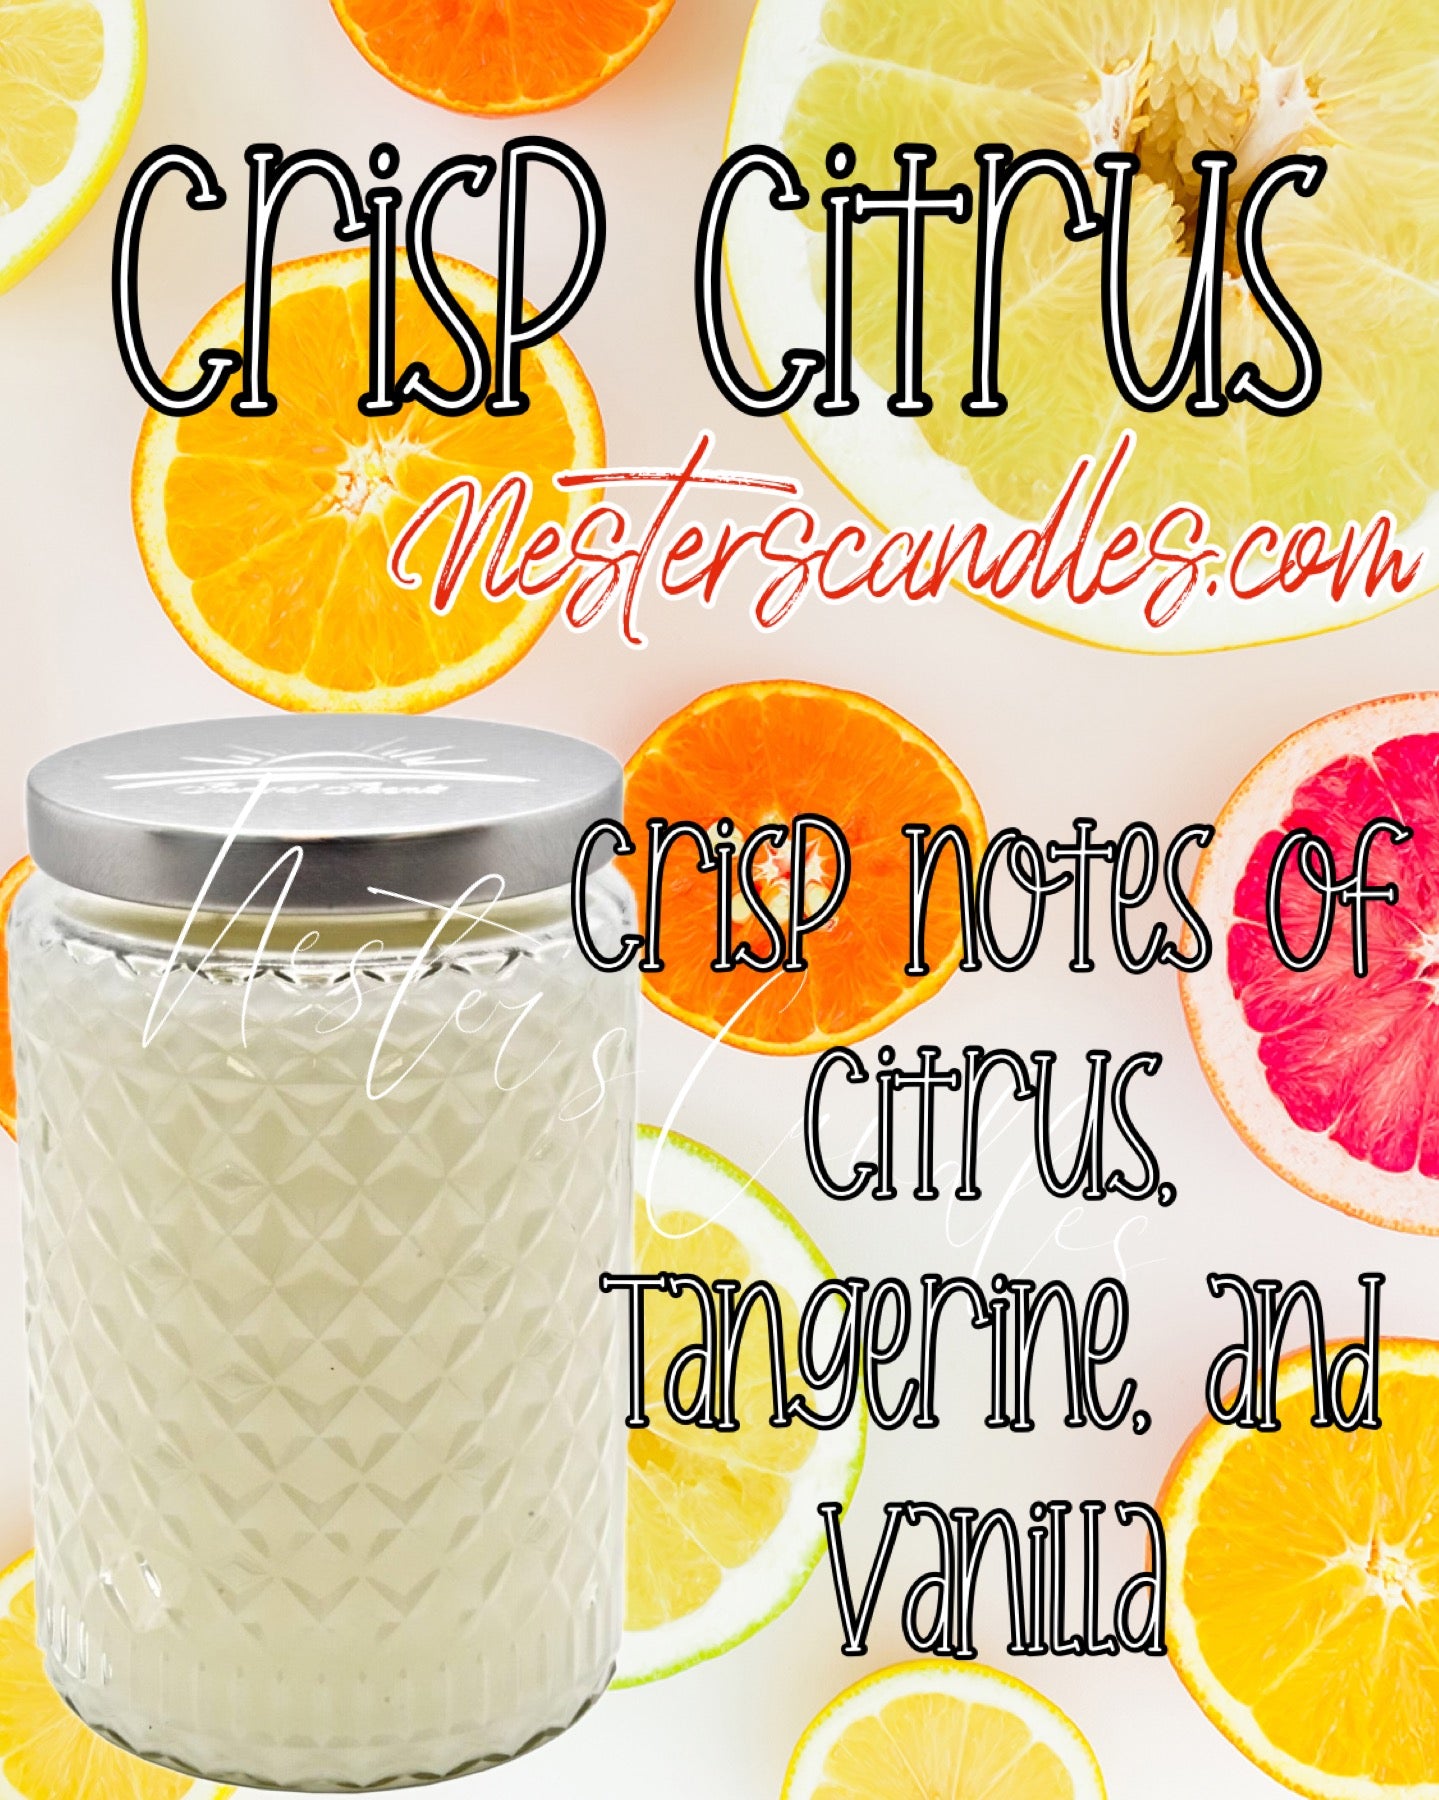 Crisp Citrus (White Citrus)